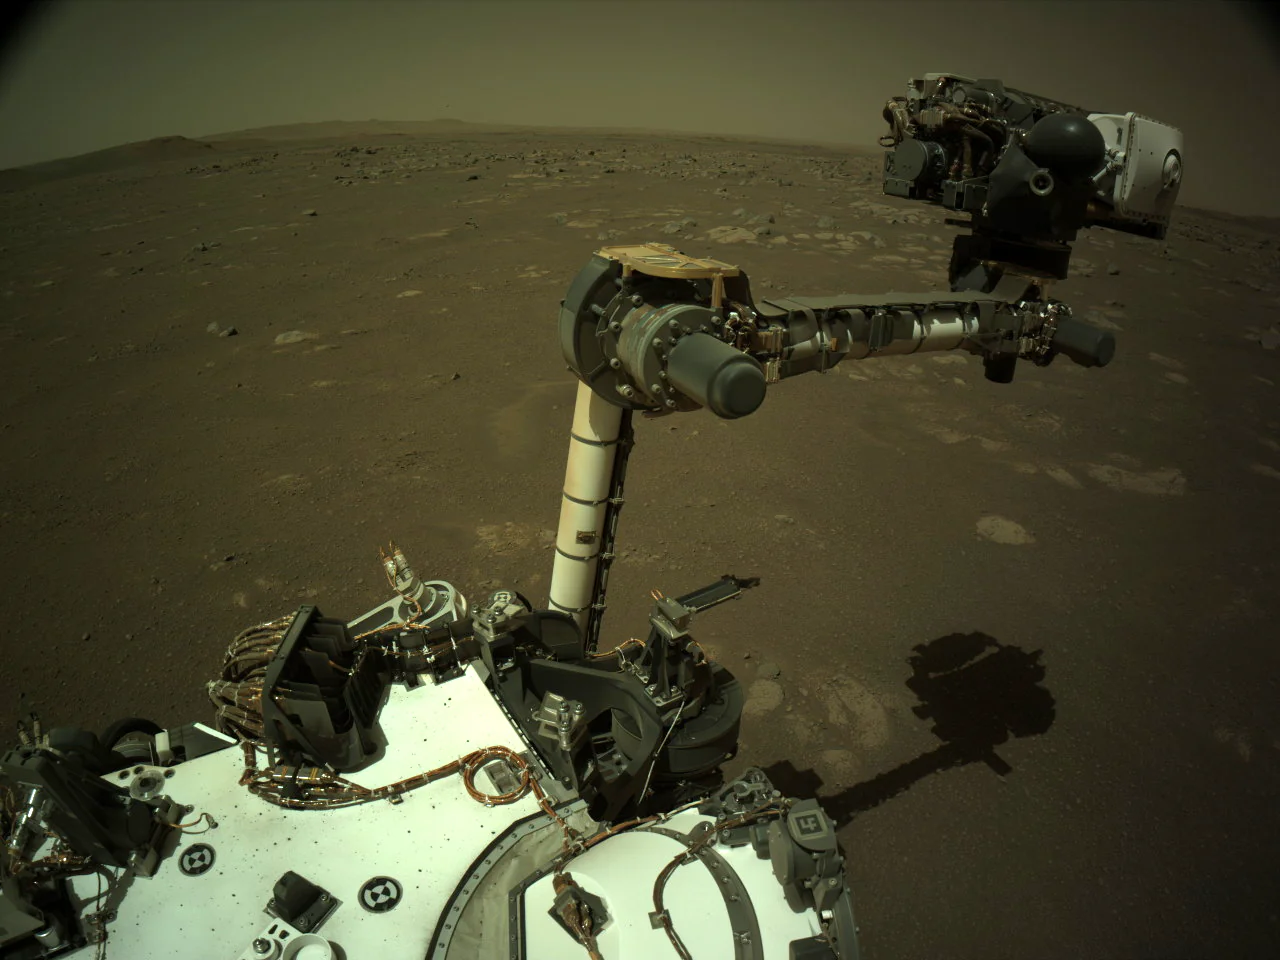 Rover perseverance nasa JPL Caltech